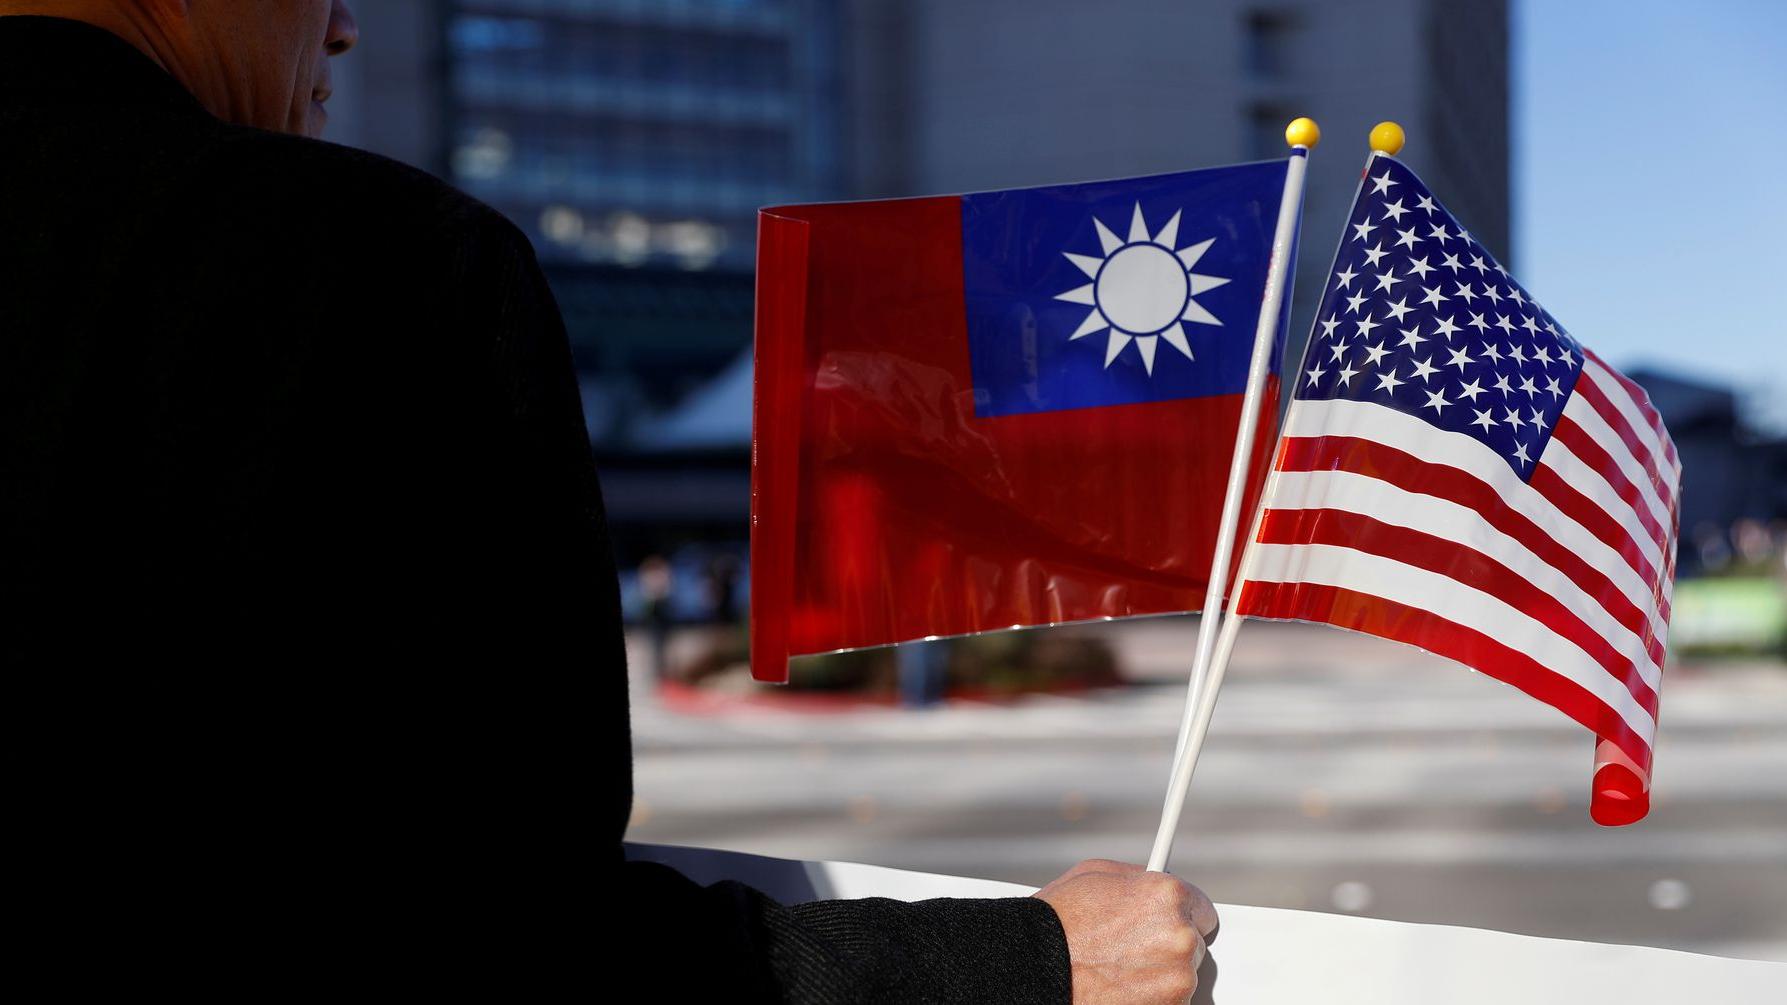 Đài Loan - nơi tiếp đón sự ghé thăm của các nghị sĩ Mỹ. Họ đến để học hỏi và chia sẻ kinh nghiệm, việc này chứng tỏ mối quan hệ giữa hai nước ngày càng tốt đẹp hơn. Hãy xem hình ảnh để khám phá thêm về Đài Loan và những điều mới mẻ mà nước này đem lại.